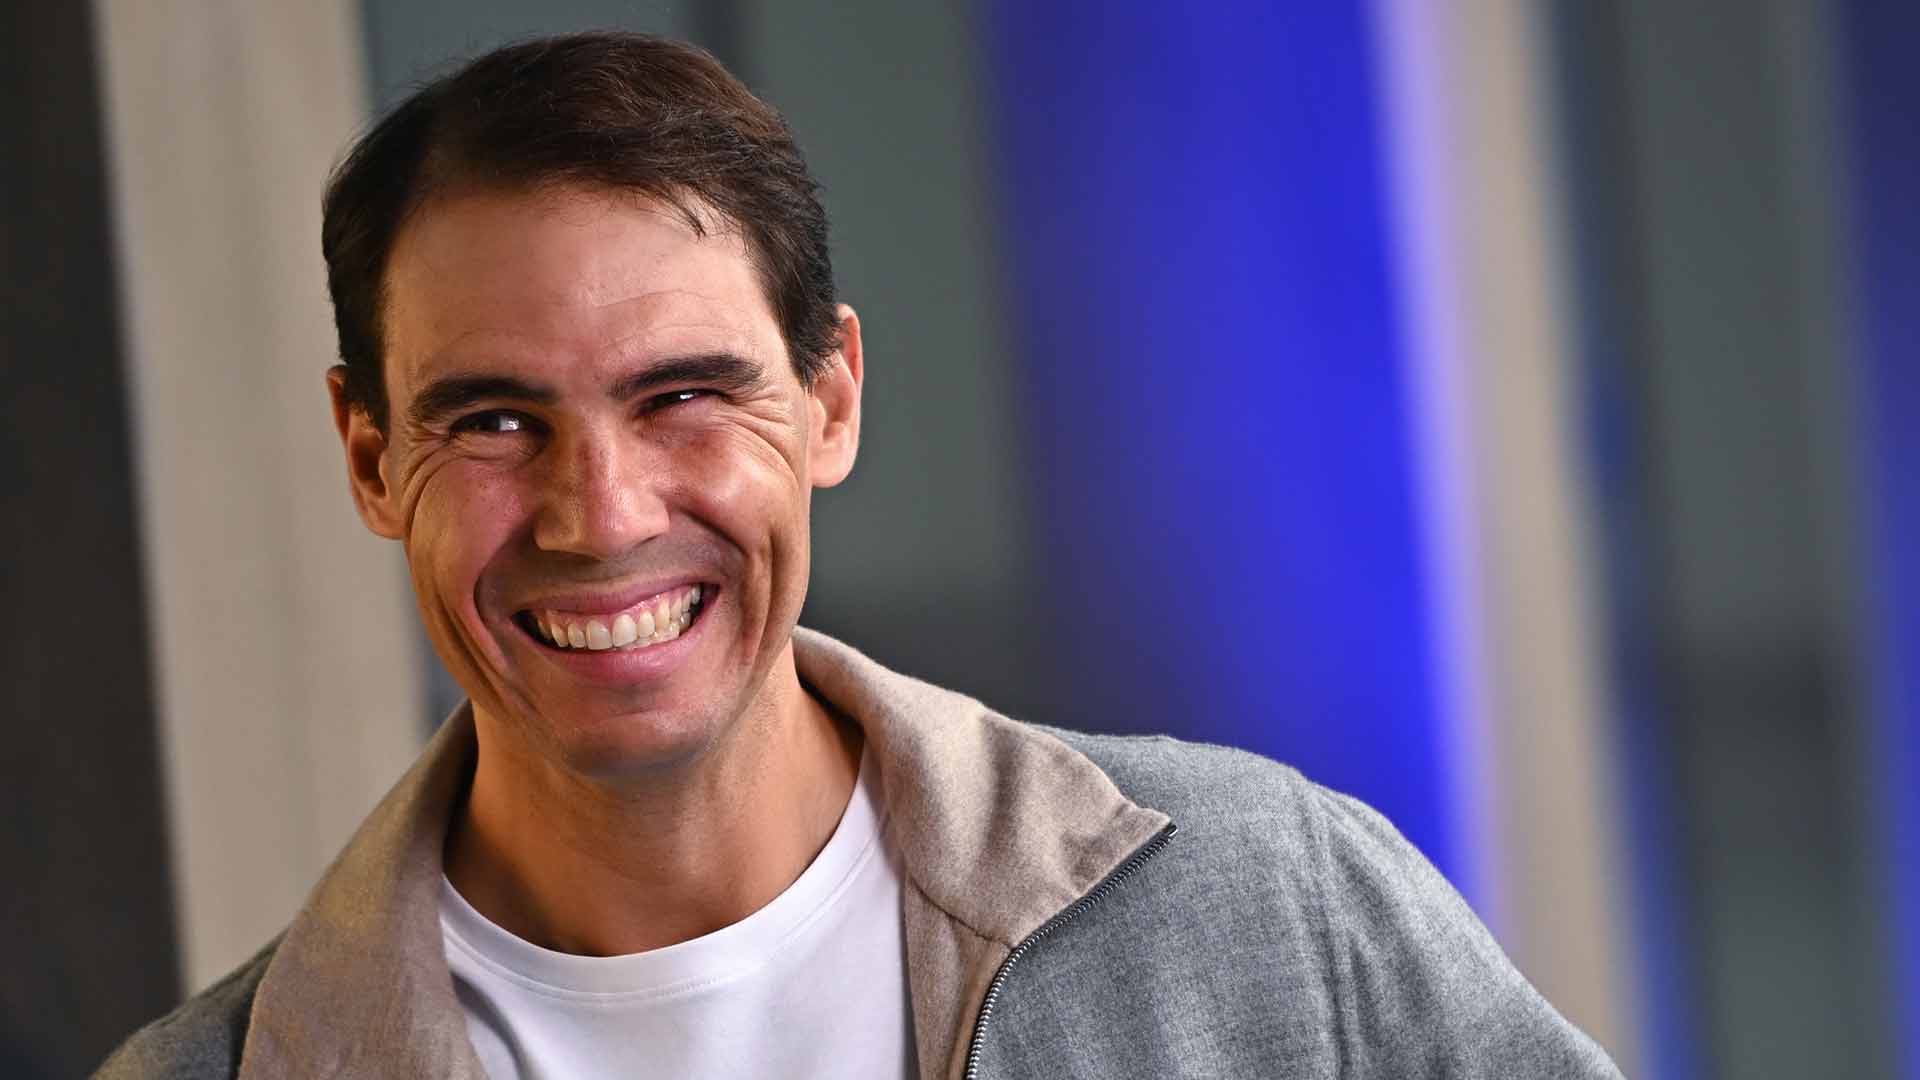 Rafael Nadal at the 2022 Nitto ATP Finals media day.